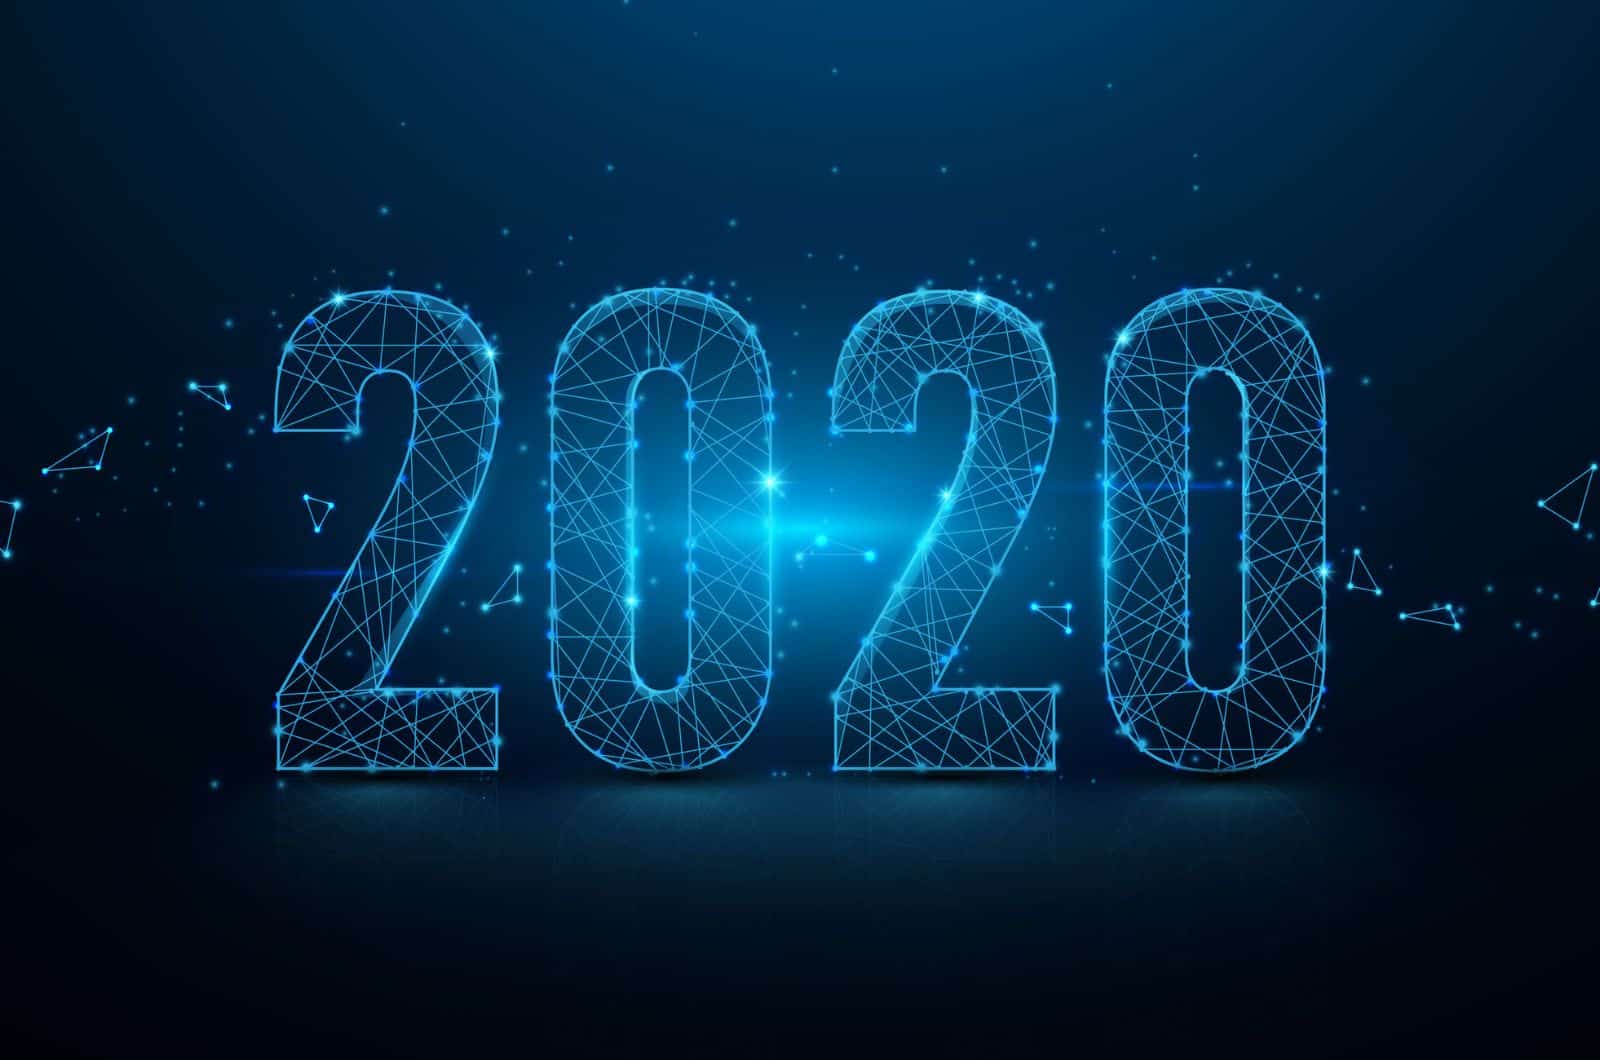 Numéros de néon filaire 2020